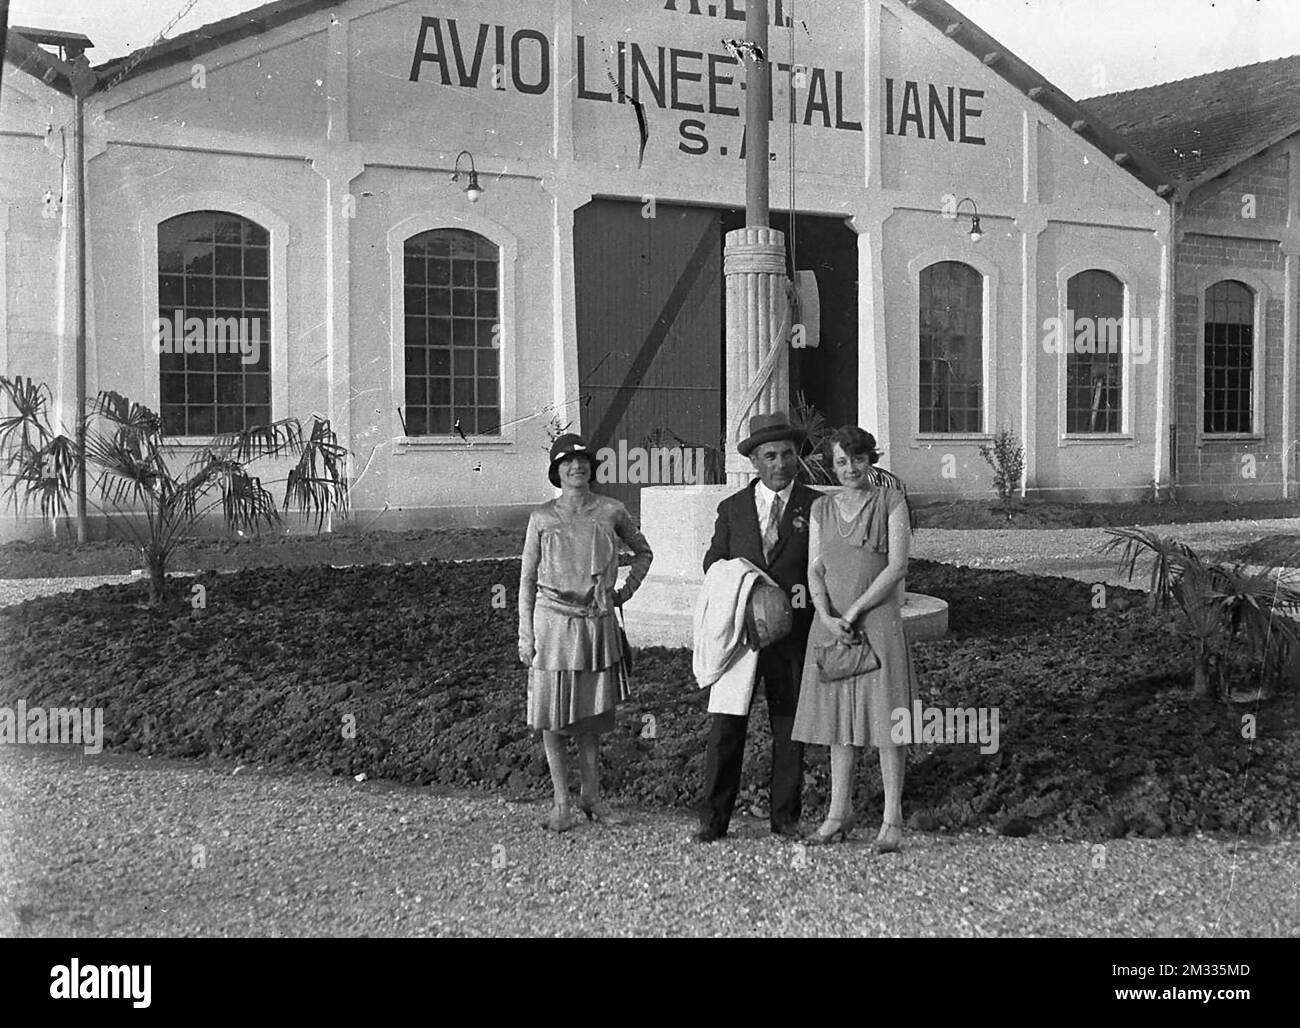 Aeroplani - Avio Linee Italiane, nota anche con la sigla ALI, è stata una compagnia aerea italiana di navigazione aerea attiva principalmente nella prima parte del XX secolo. Stock Photo